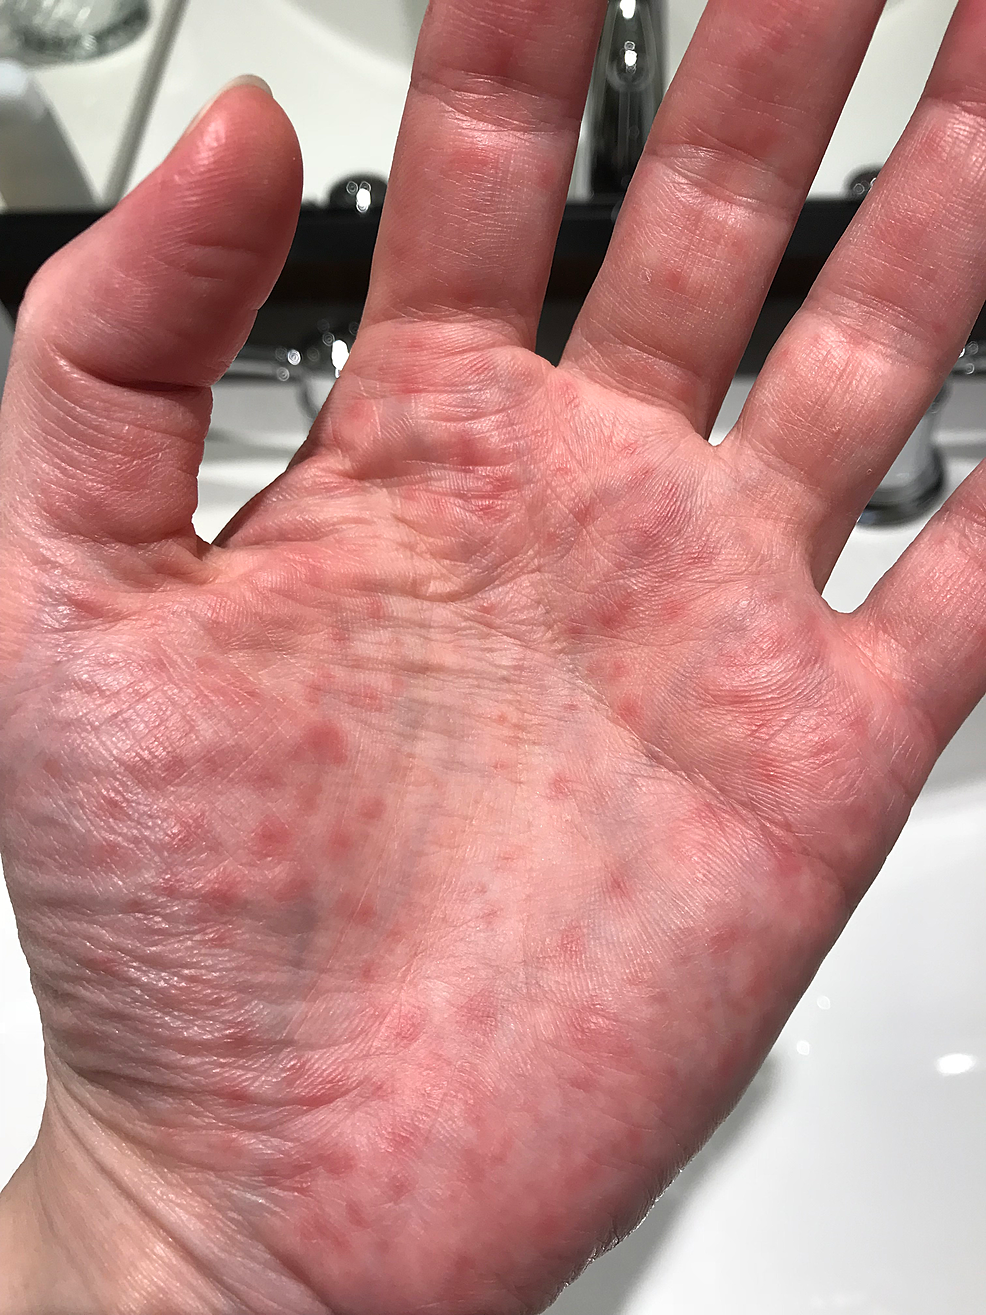 lupus pernio hands